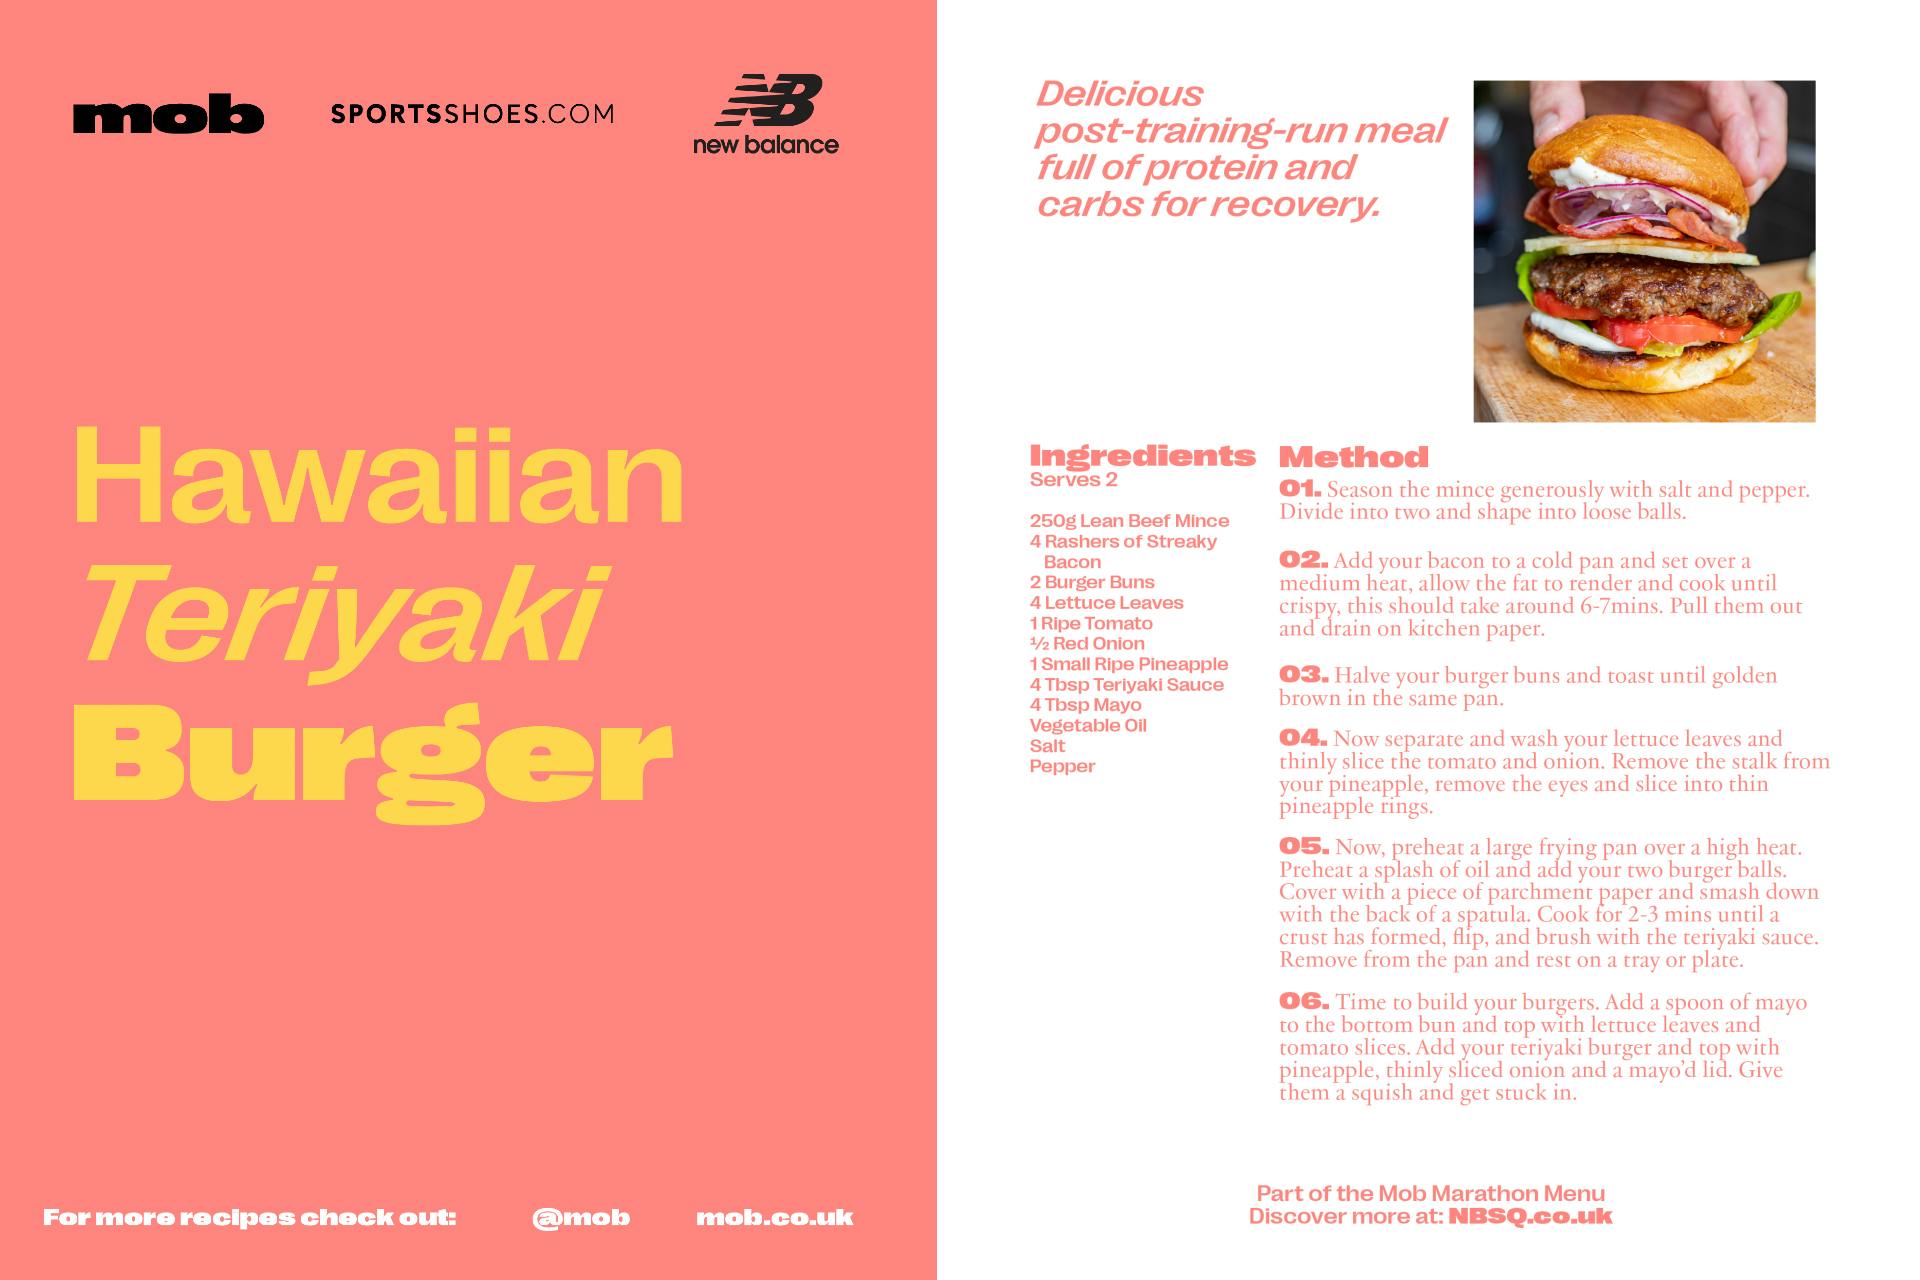 hawaiian-teriyaki-burger